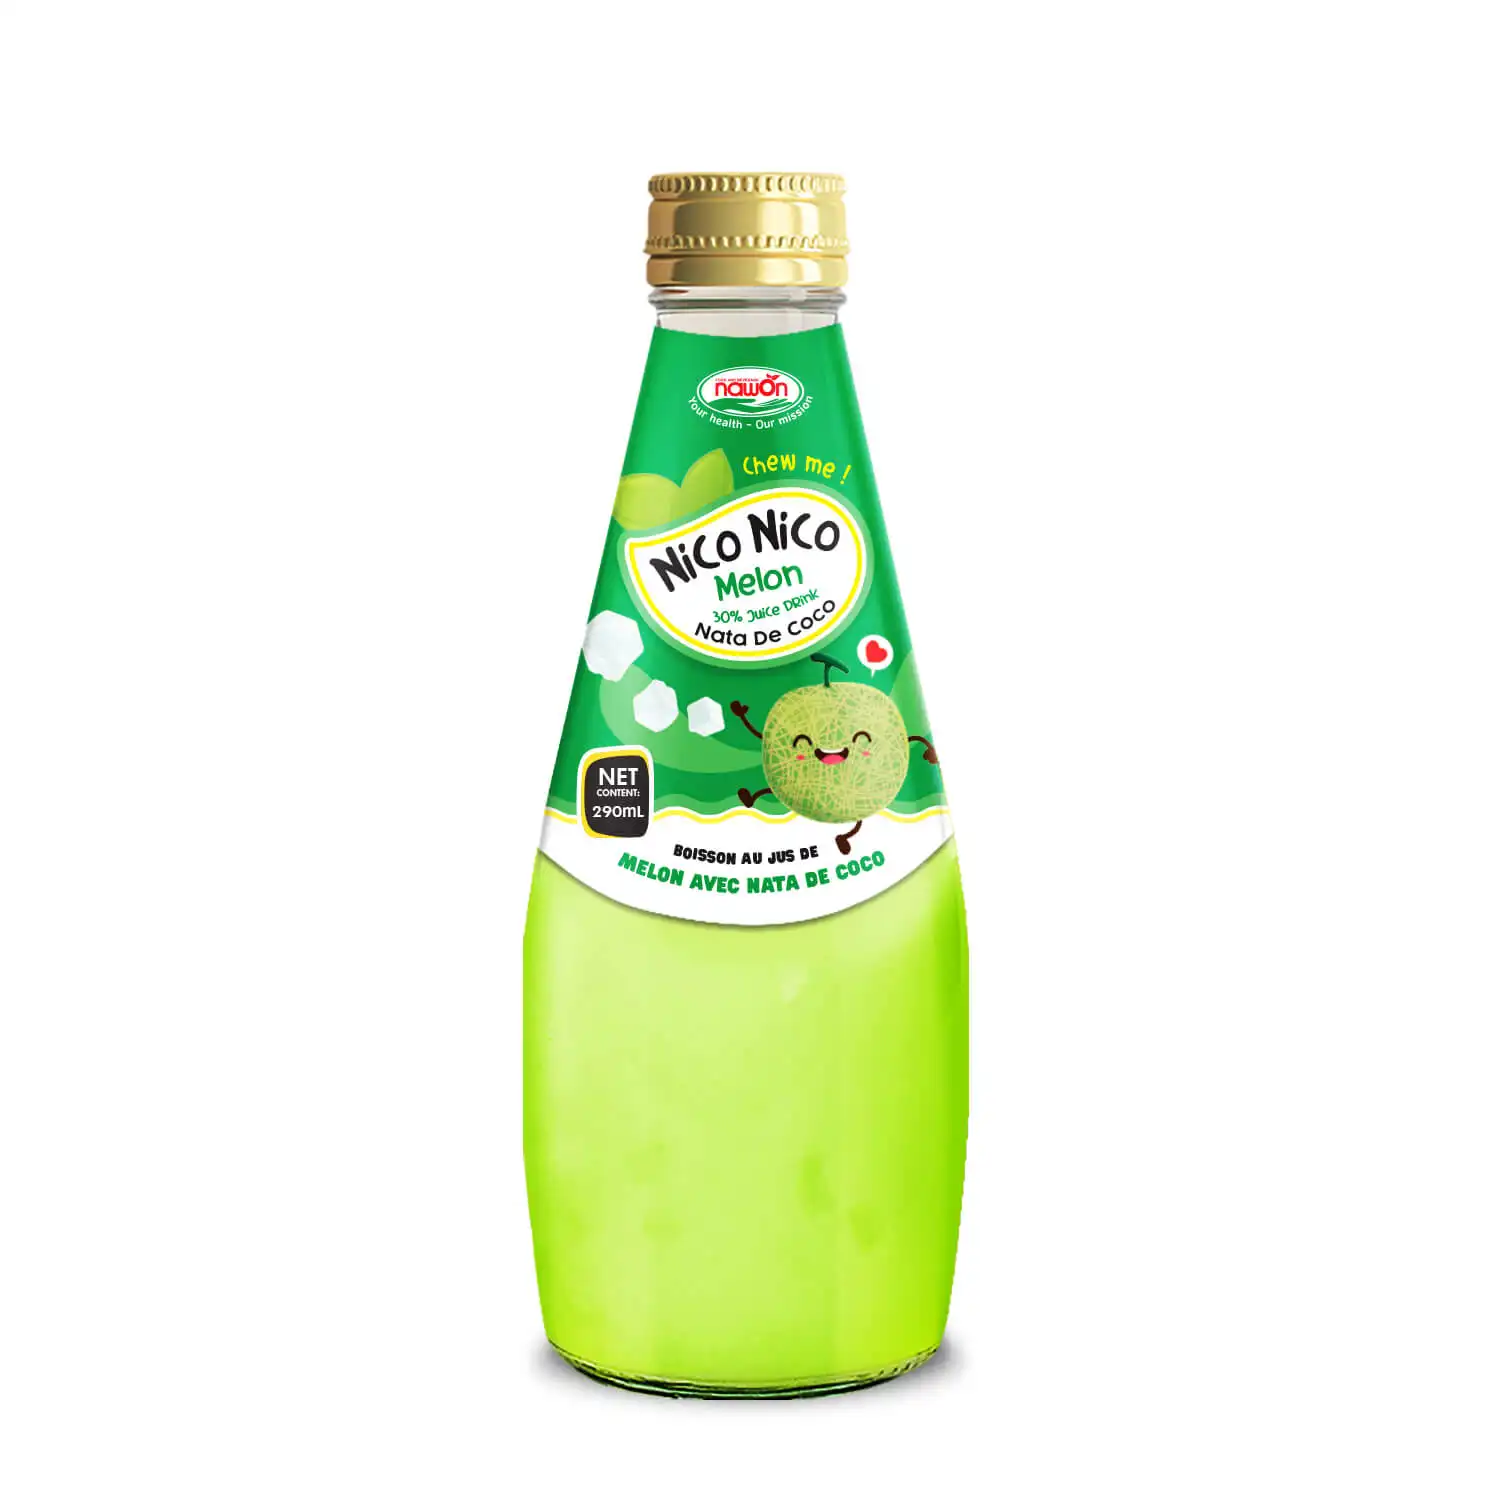 नाटा डी कोको के साथ 30% तरबूज का रस - 290 एमएल कांच की बोतल में नारियल जेली पेय निजी लेबल पेय निर्माता वियतनाम